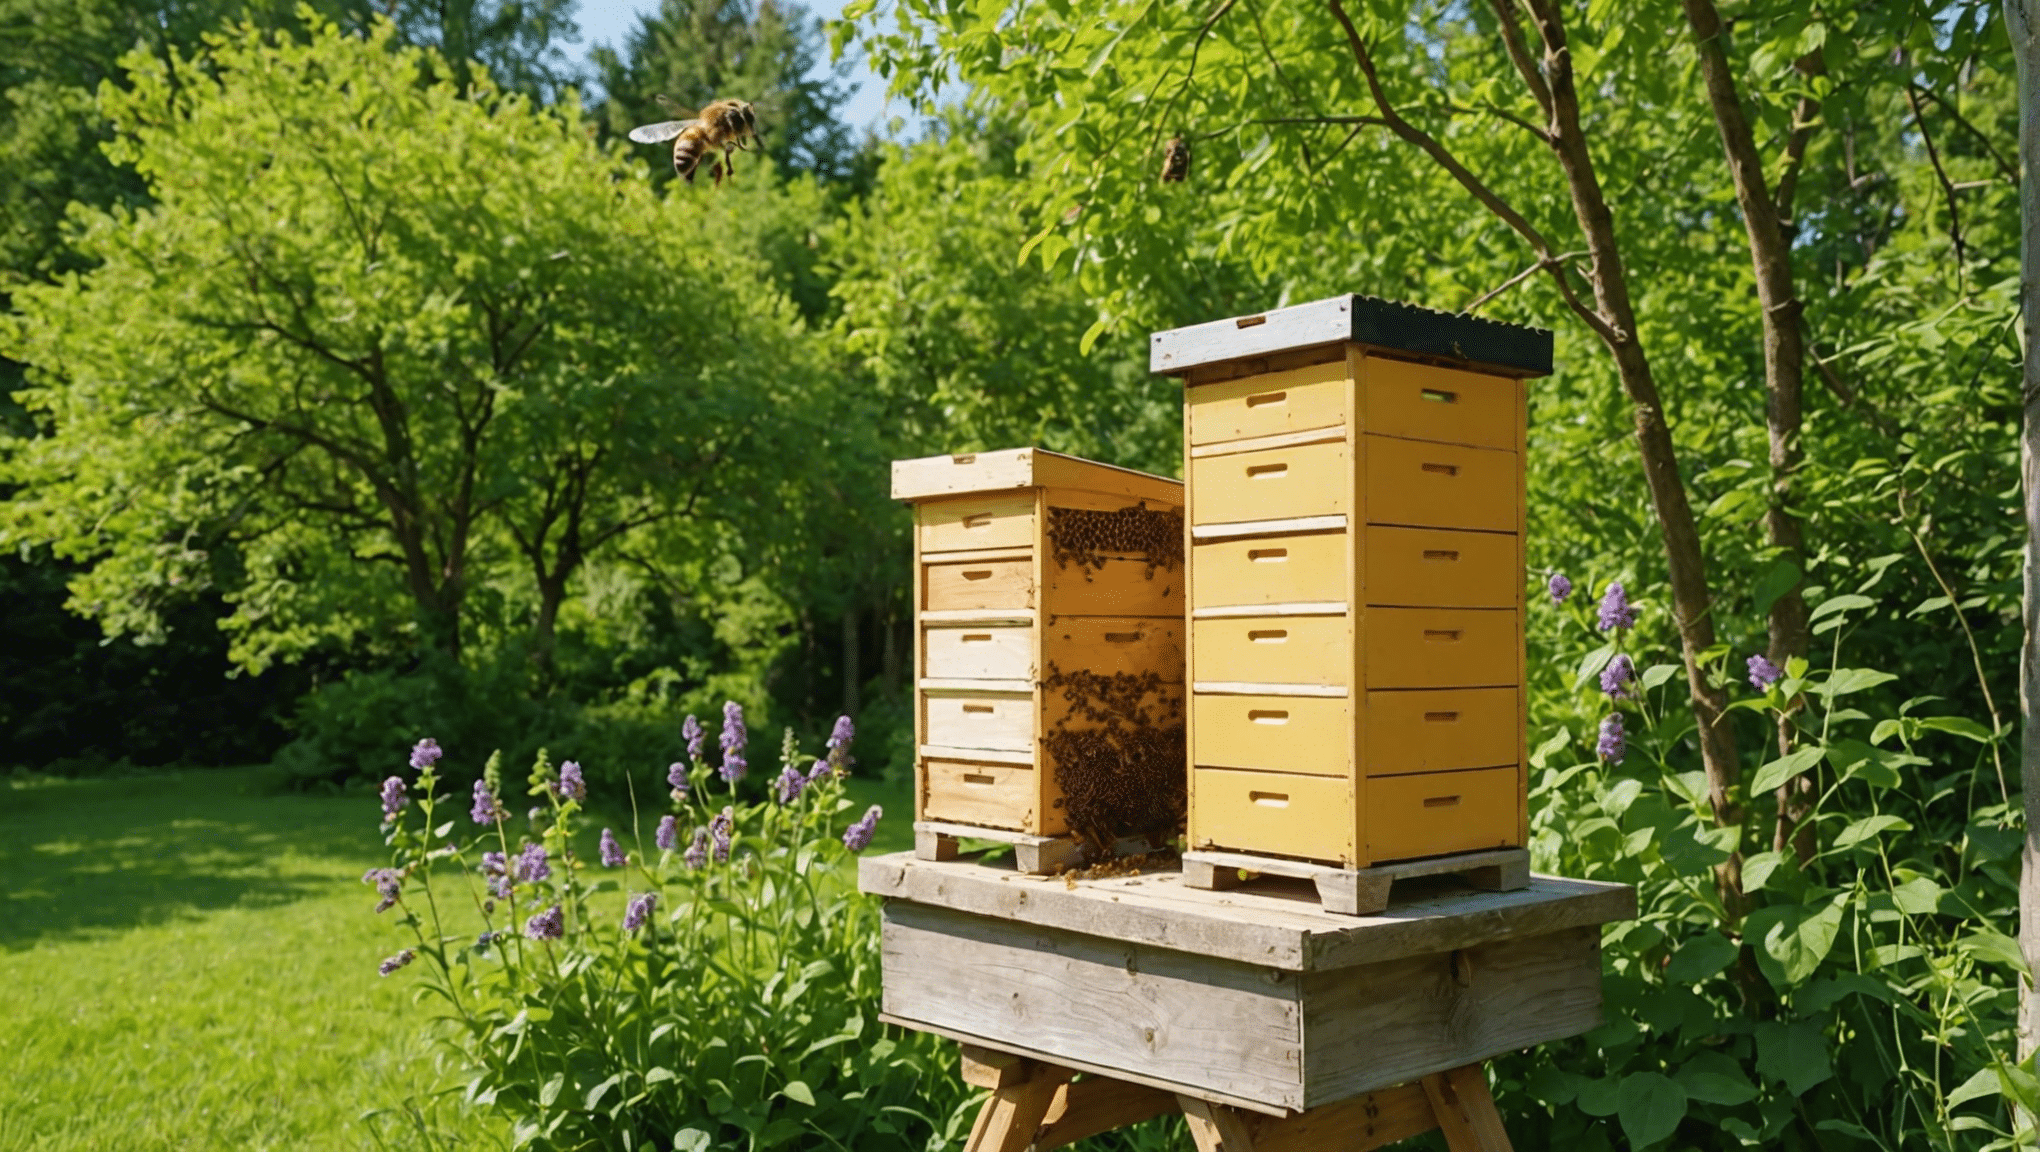 v tomto komplexnom sprievodcovi nájdete všetko, čo potrebujete vedieť o prírodných úľoch včiel medonosných, vrátane spôsobu ich výroby, ich výhod a starostlivosti o ne.